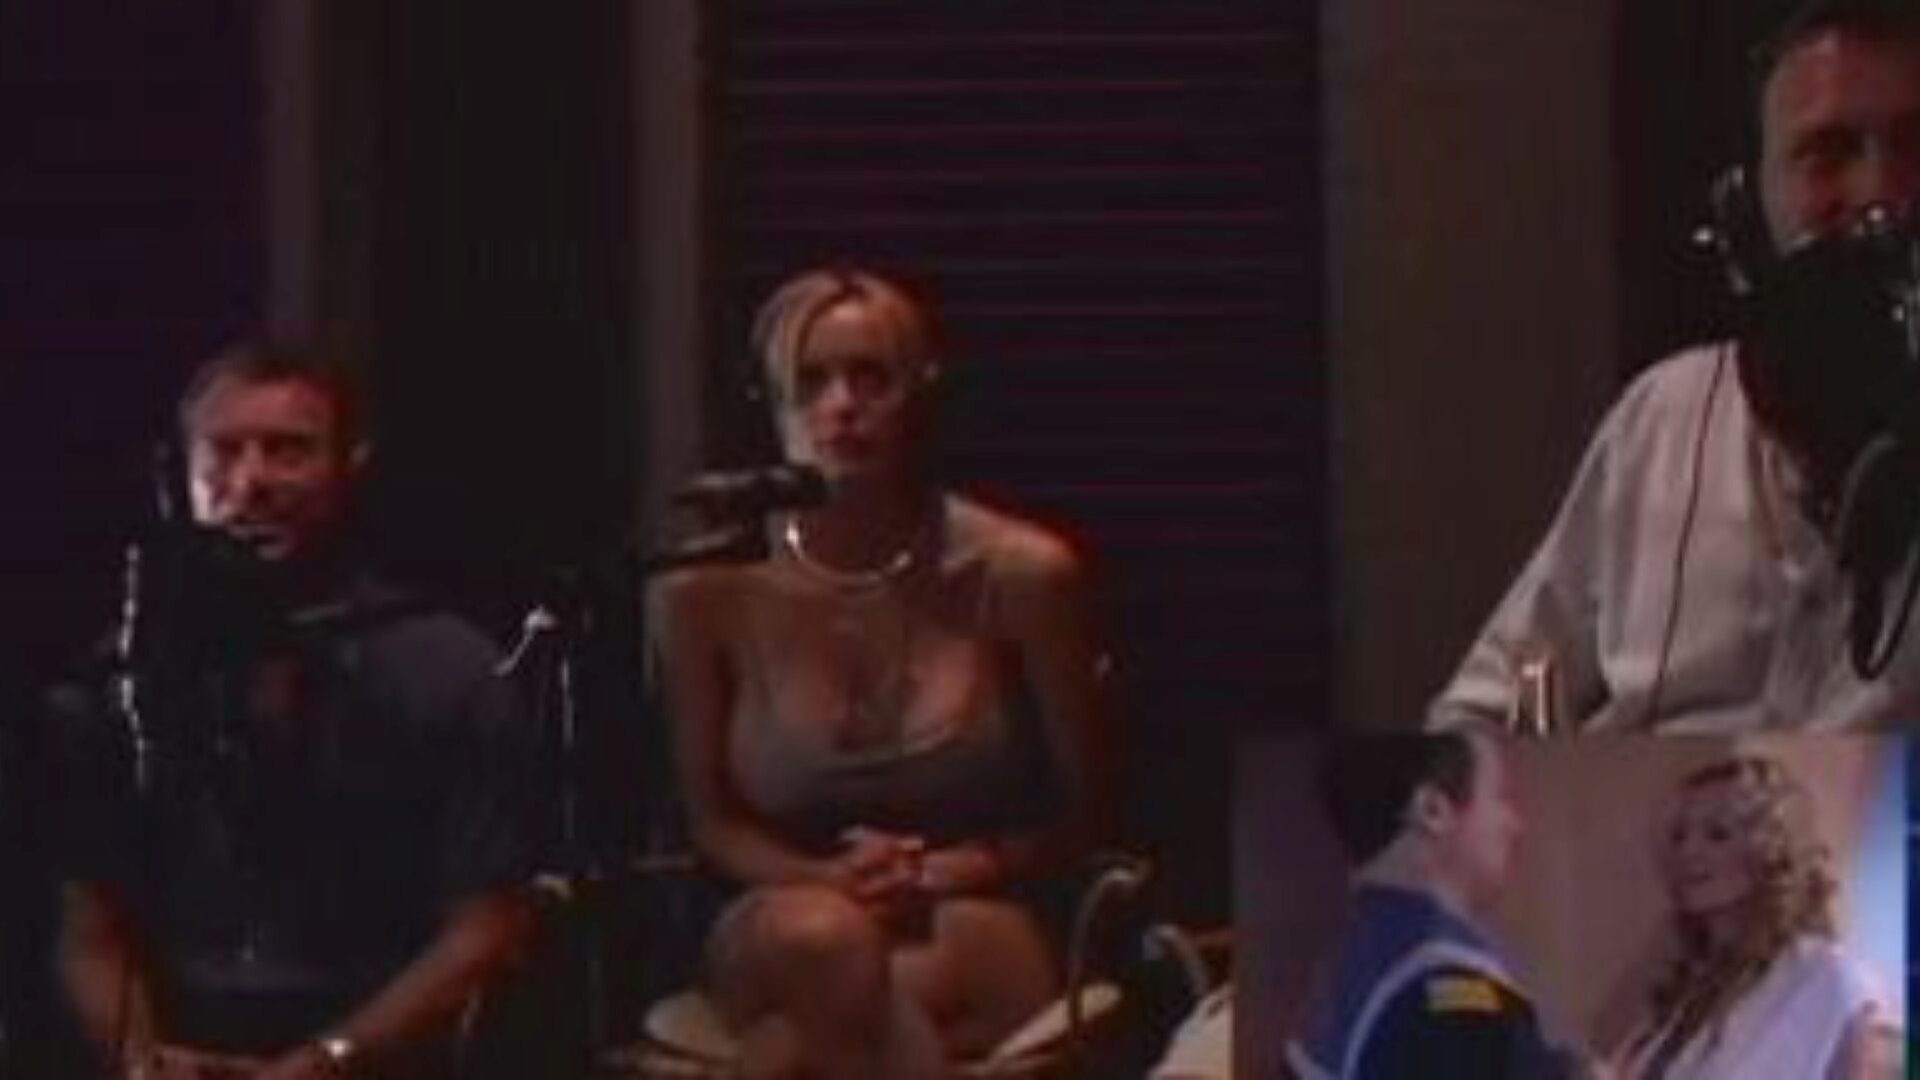 Space Nuts 2003: darmowy film porno o orzechach 8c - xhamster oglądaj kosmiczne orzechy z 2003 r. klip do podłączania rur za darmo na xhamster, z najseksowniejszą kolekcją scen z orzechów, chambers, retro i vintage porno